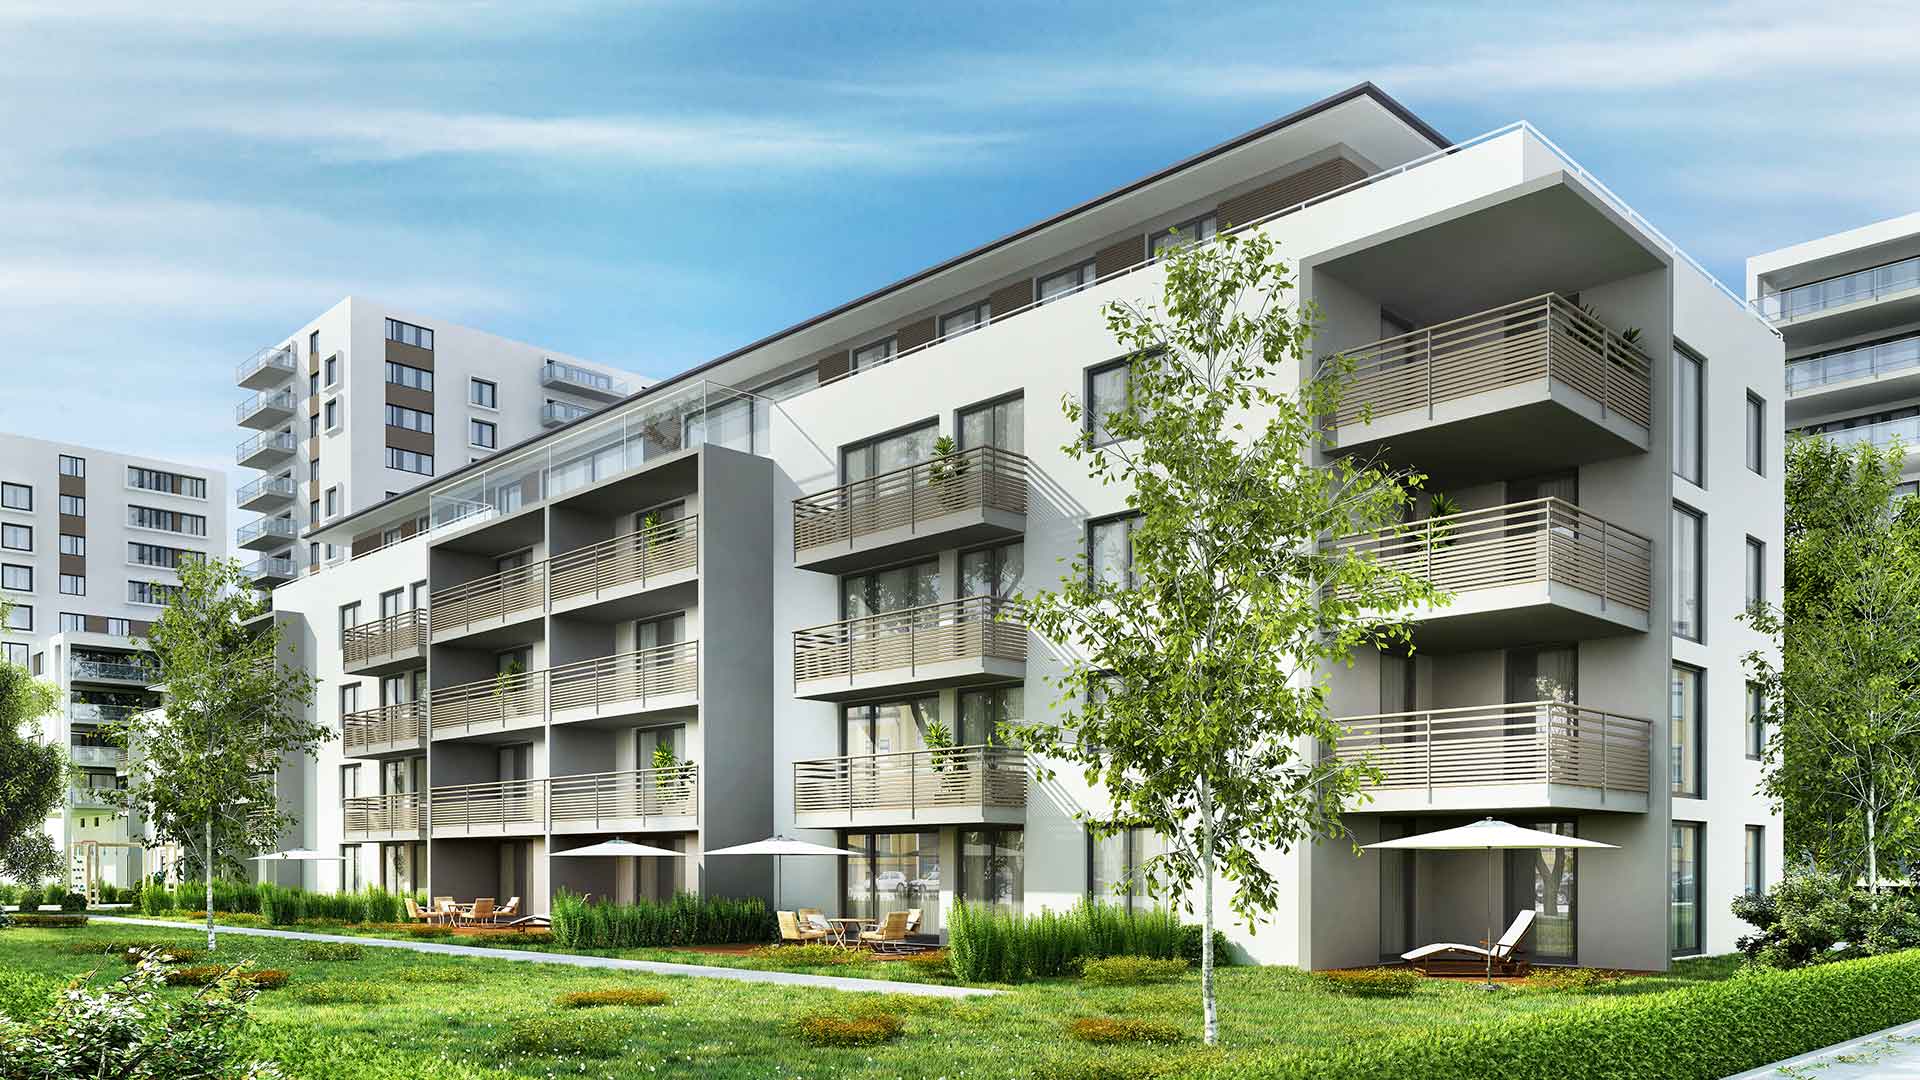 Bonauer Blitzschutzbau GmbH - Leistungen – Blitzschutz für Mehrfamilienhäuser